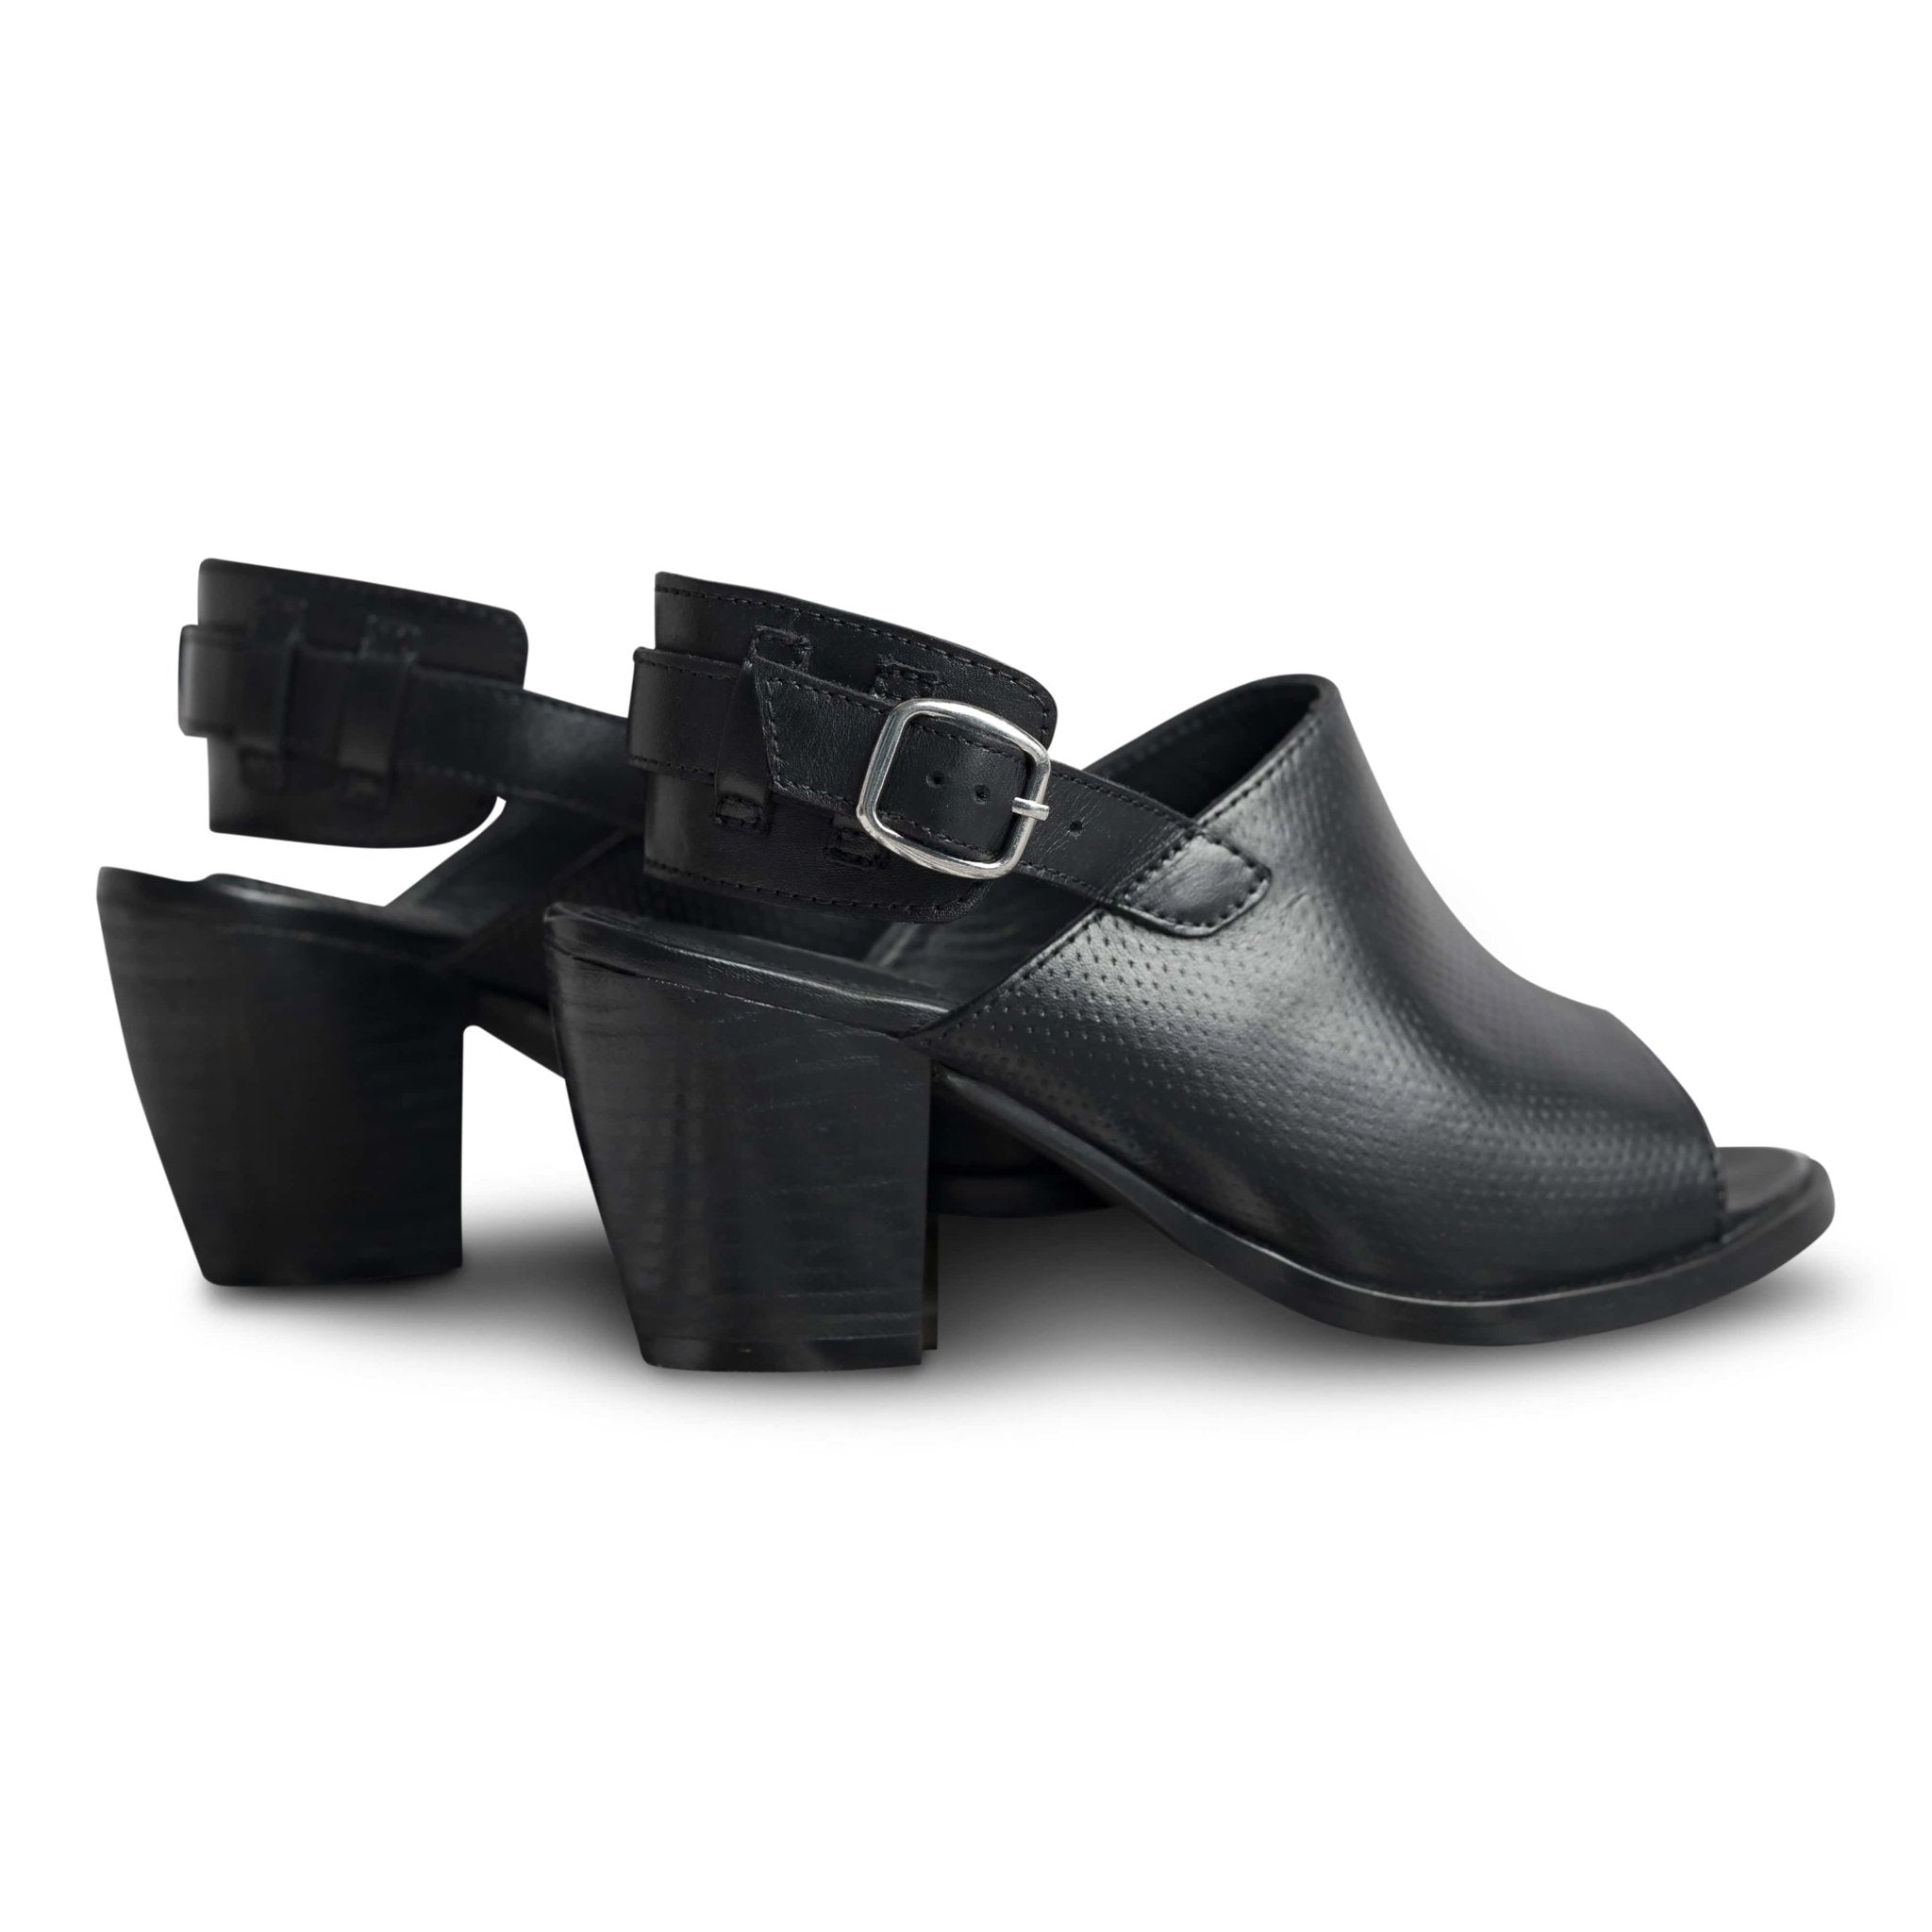 Sandalo Nera - dmodot Shoes